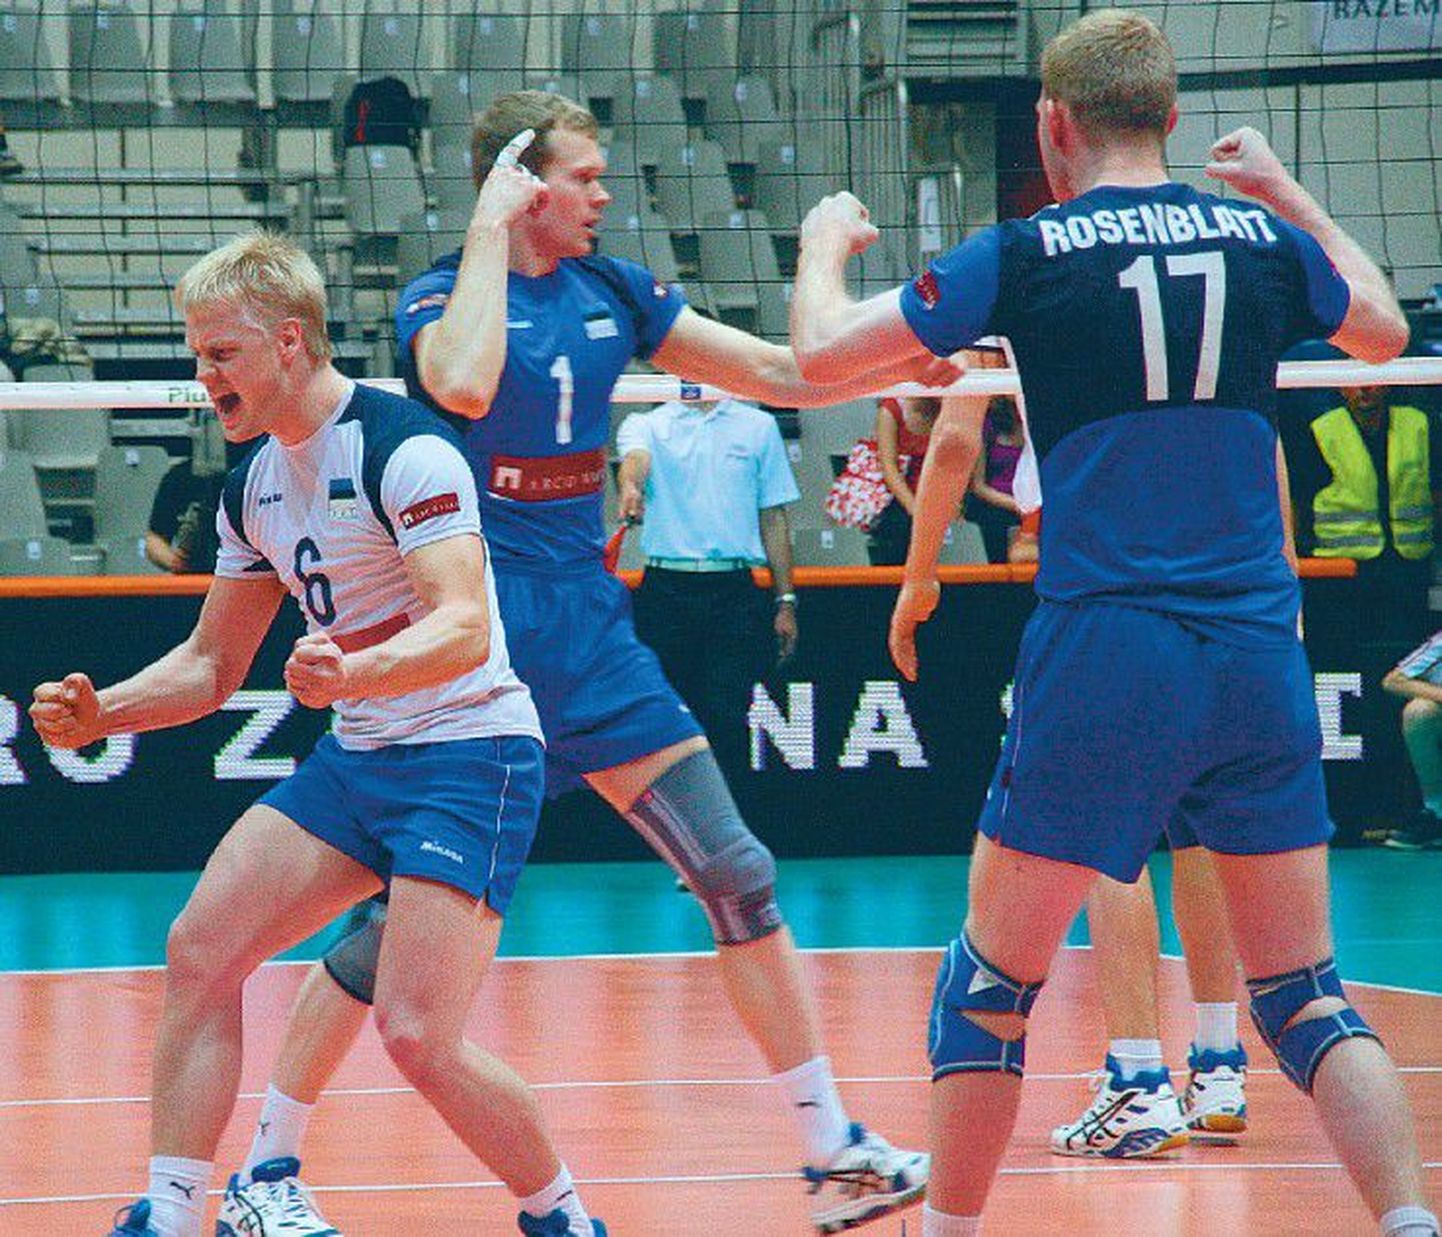 Eesti võrkpallikoondise mängijad Sten Esna, Raimo Pajusalu ja Martti Rosenblatt rõõmustavad järjekordse punkti üle.